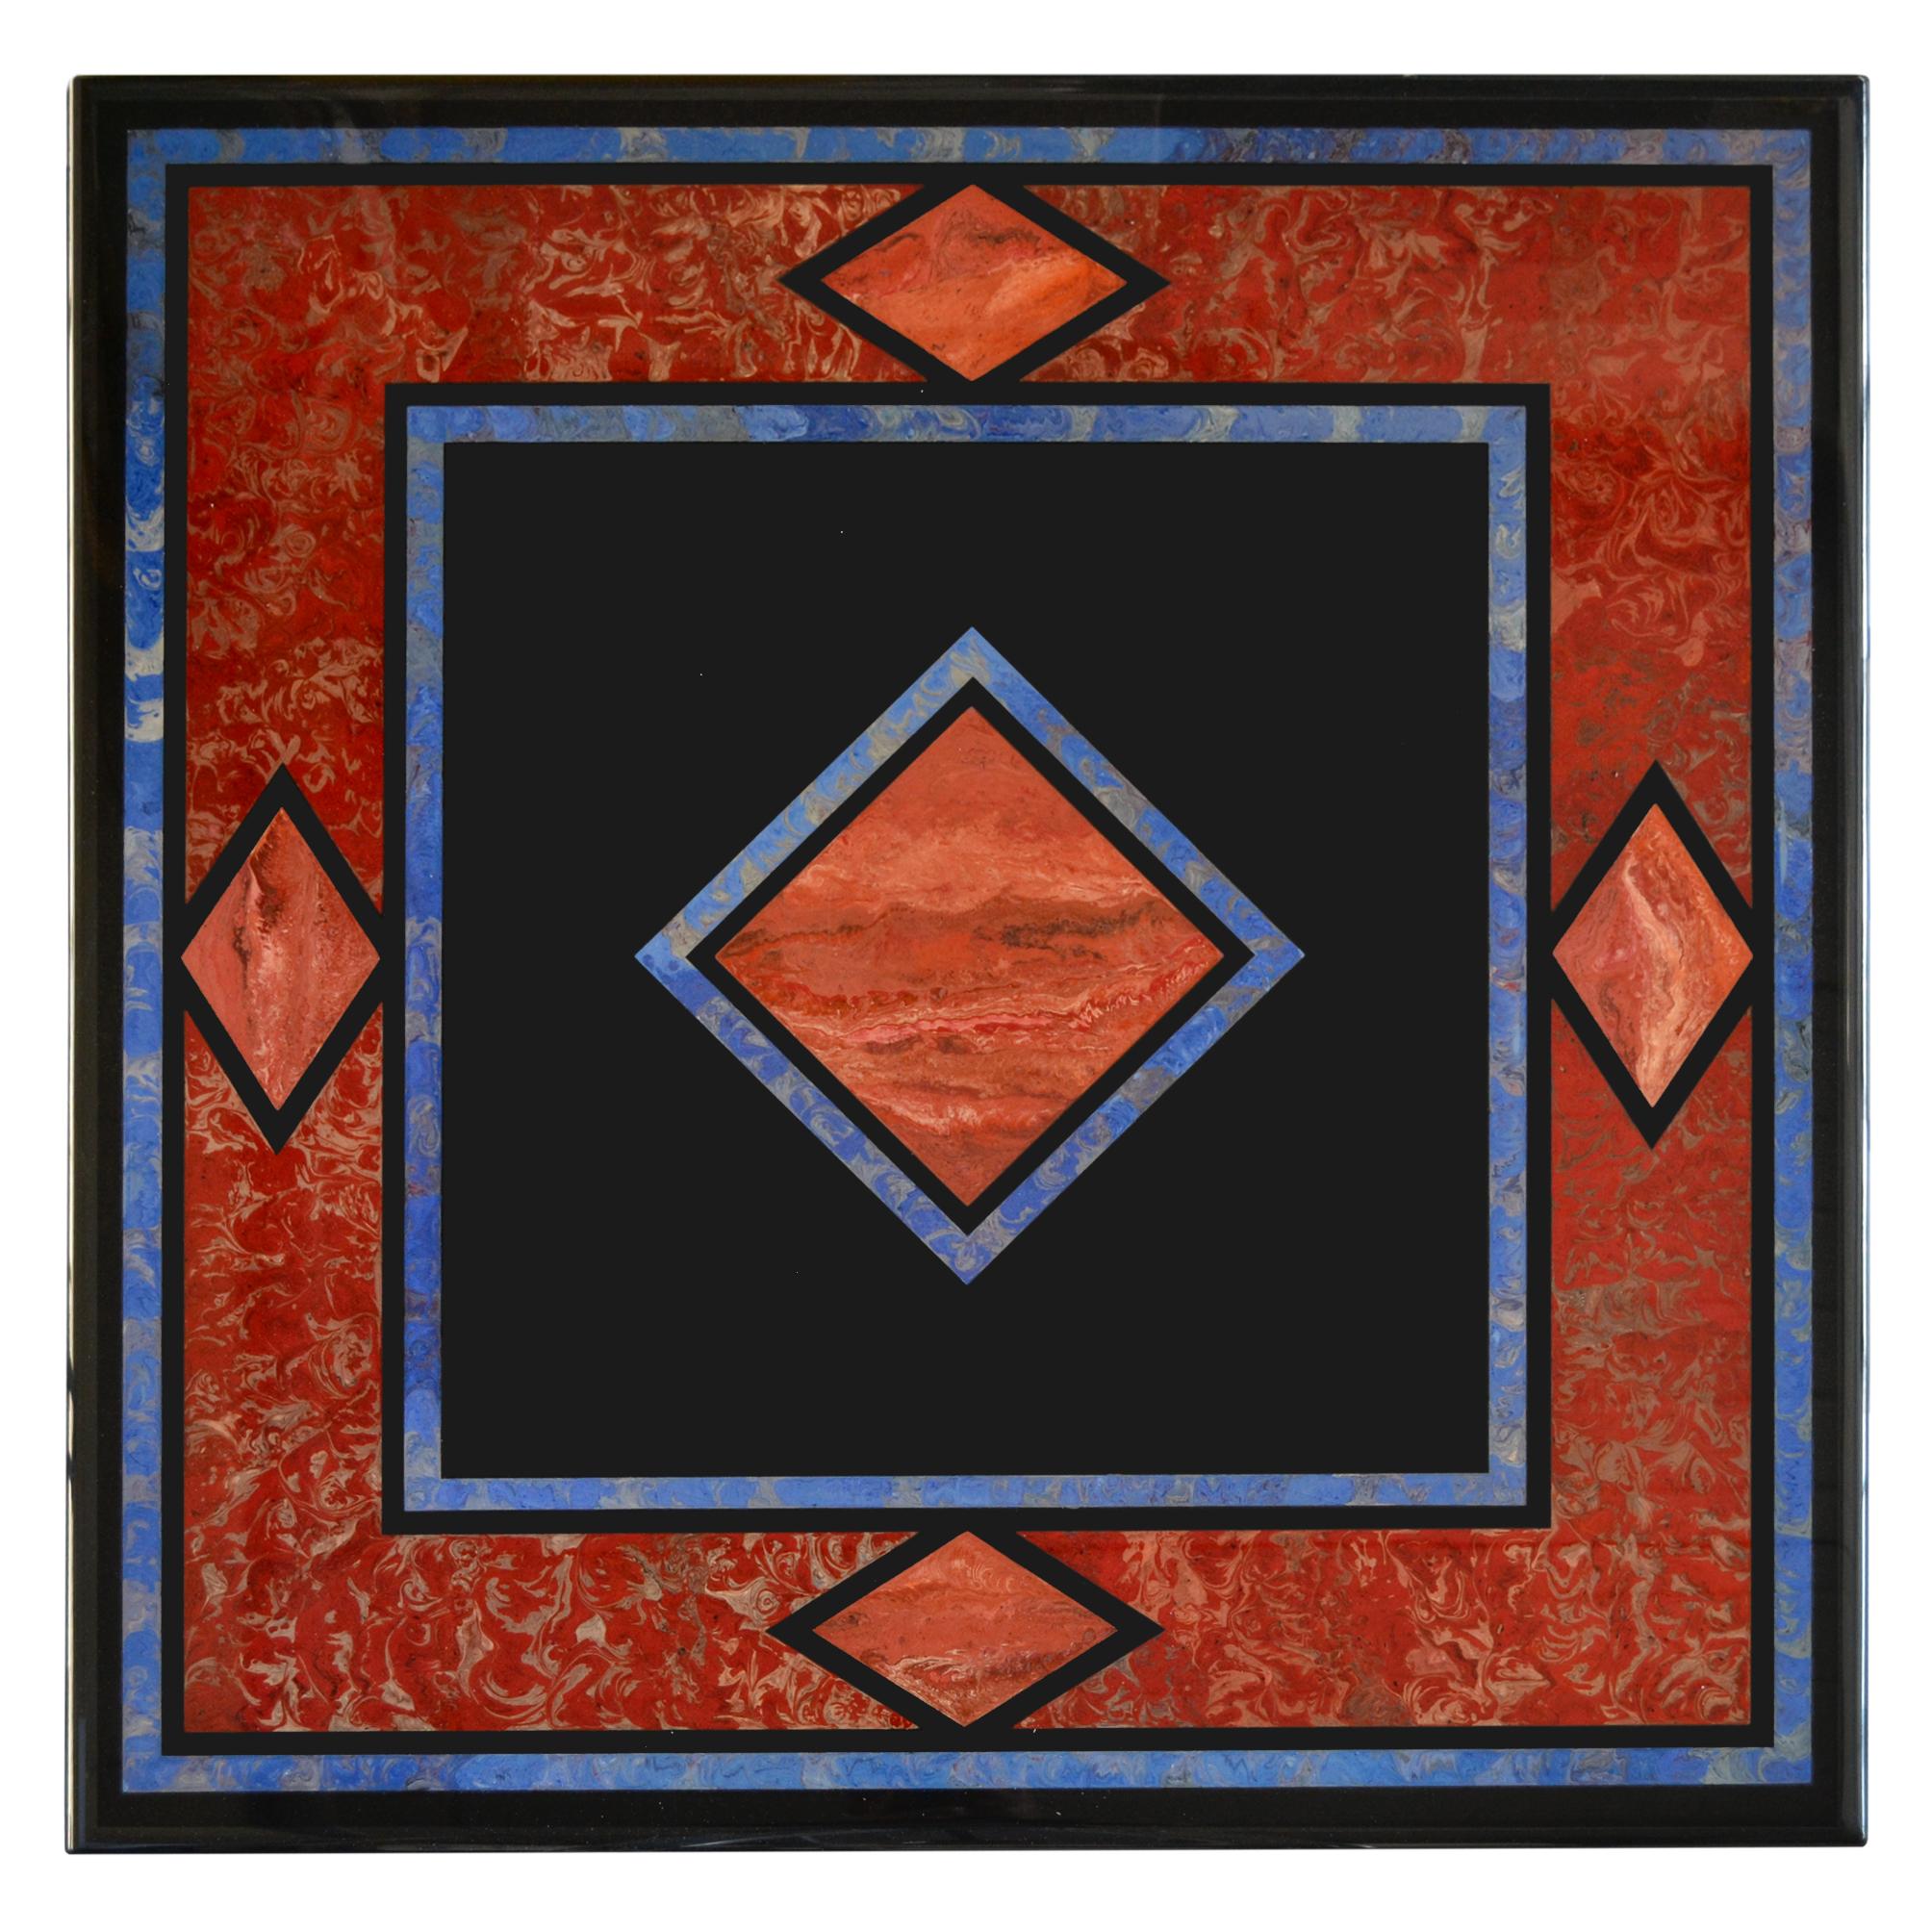 Table basse fabriquée en ardoise noire et incrustée selon la technique artistique Scagliola. 
Design géométrique bleu vif et rouge sur ardoise carrée cm. 100 x 100 posé sur 4 pieds H. 36 cm au total toute la table est recouverte d'un revêtement